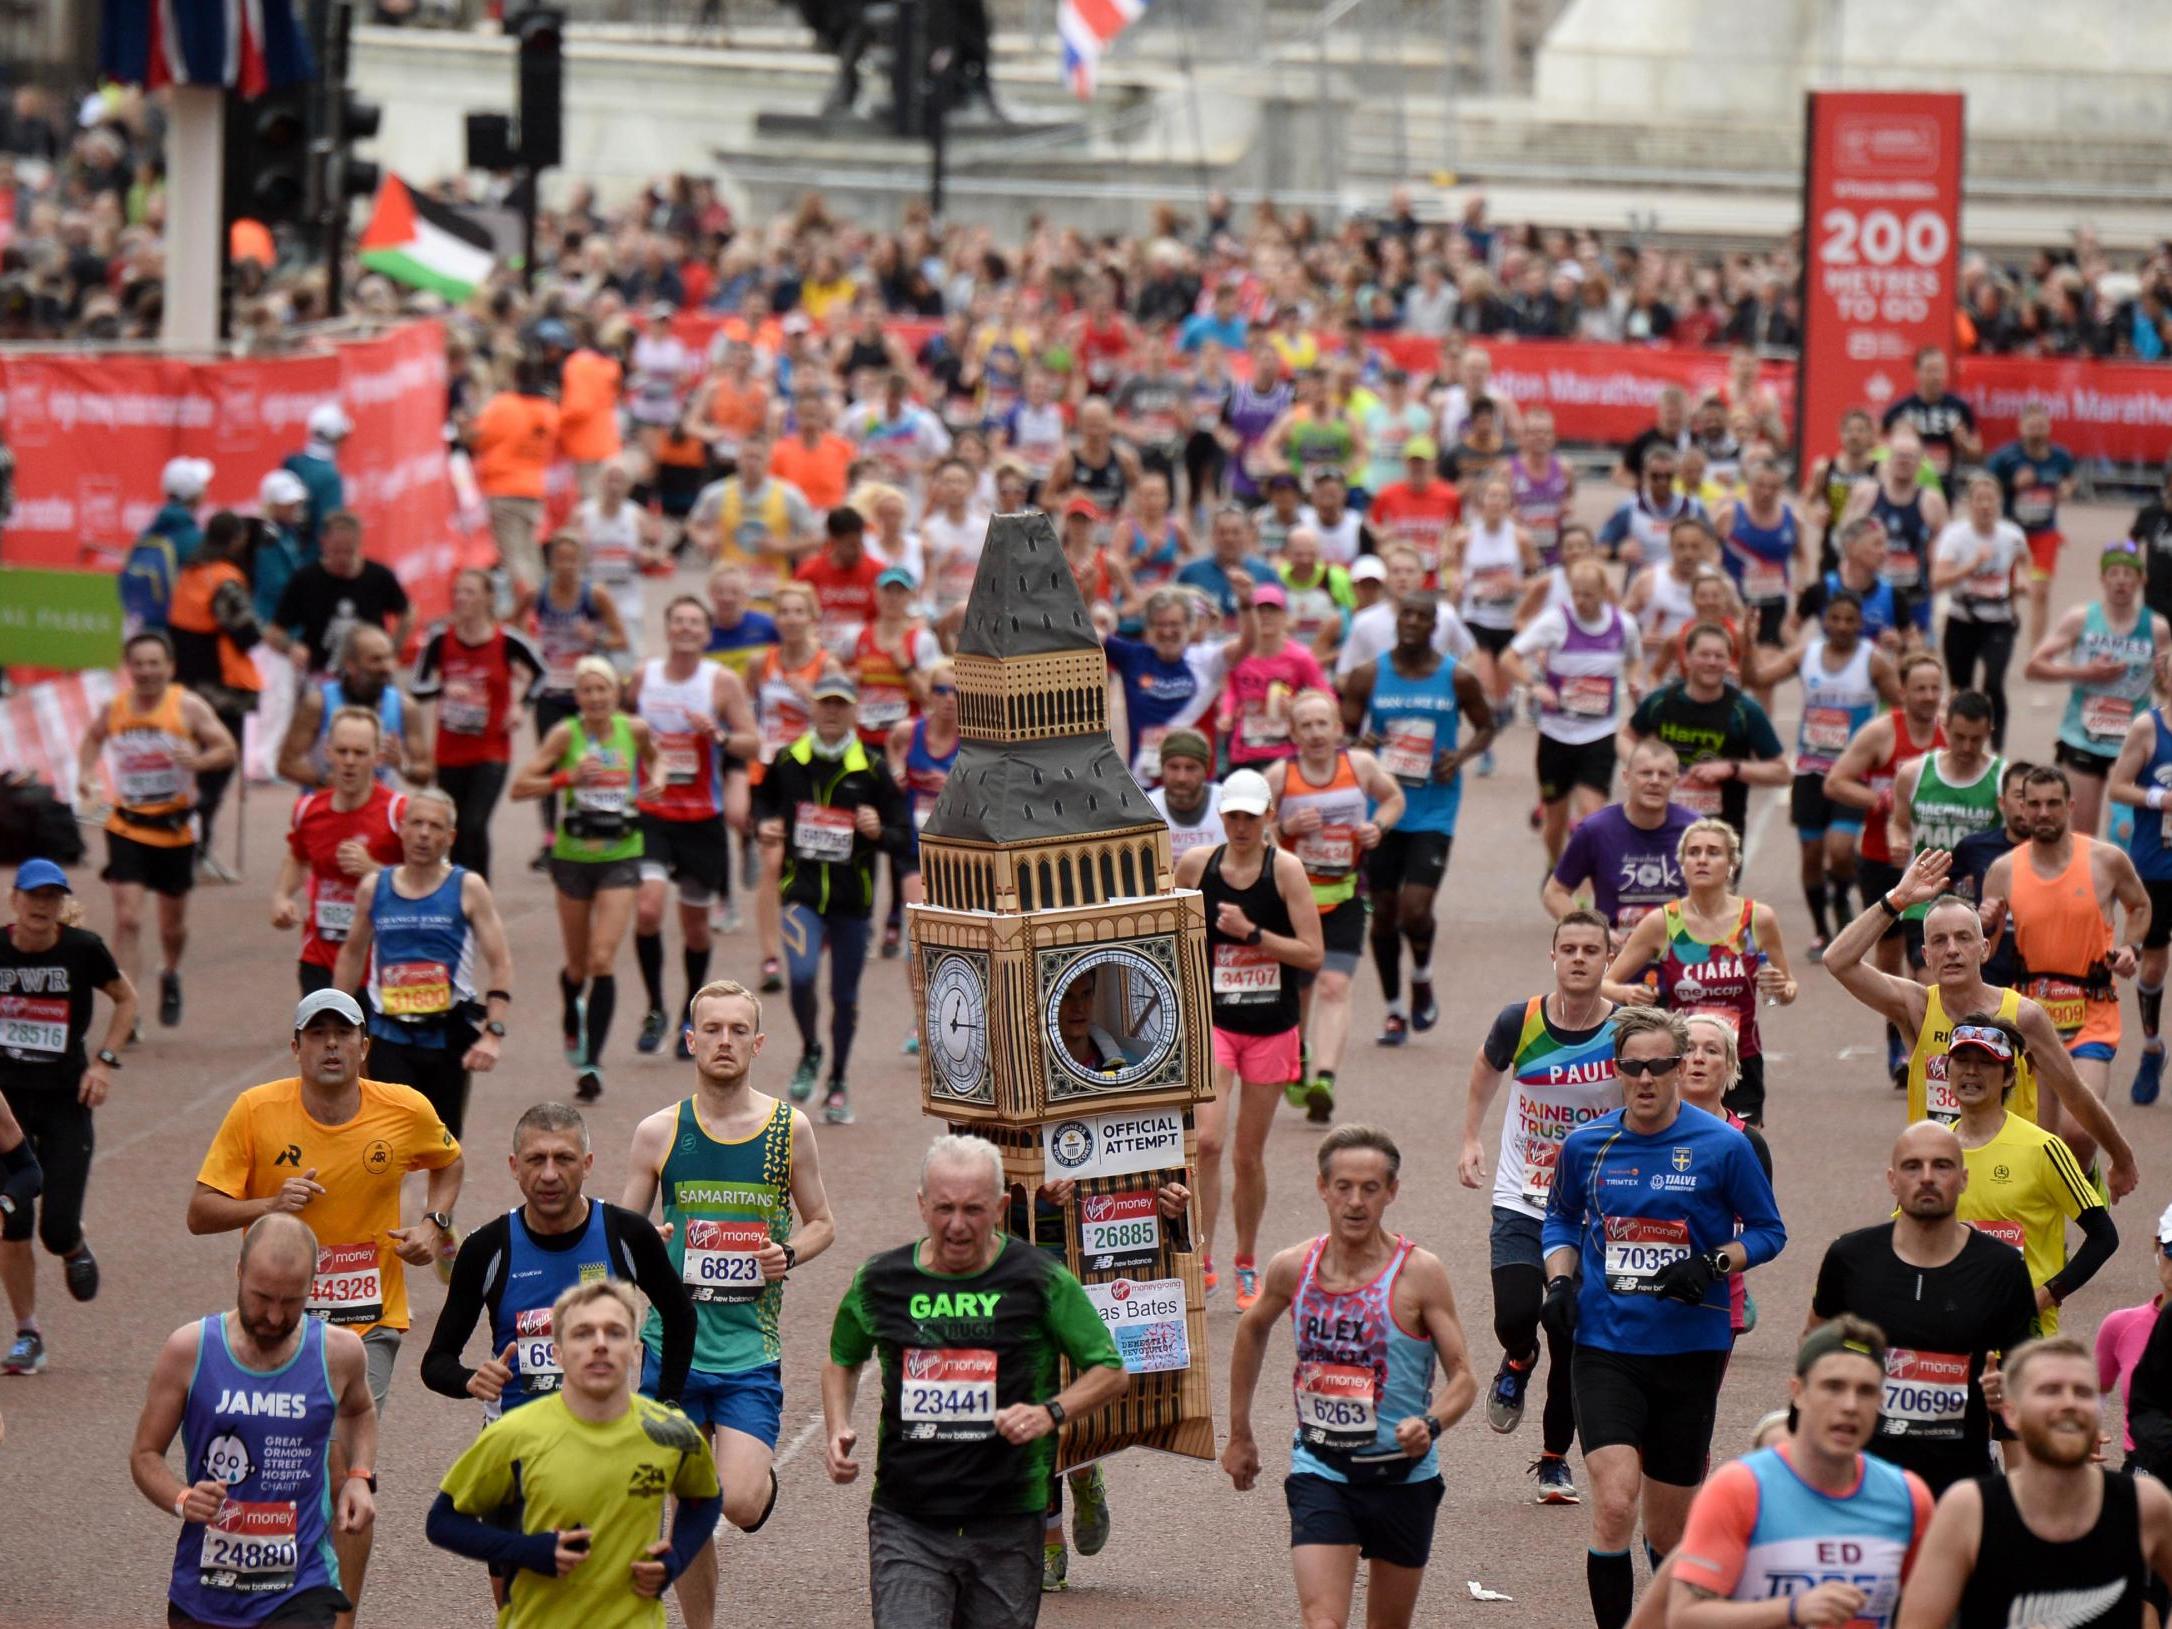 The London Marathon has been postponed until 4 October